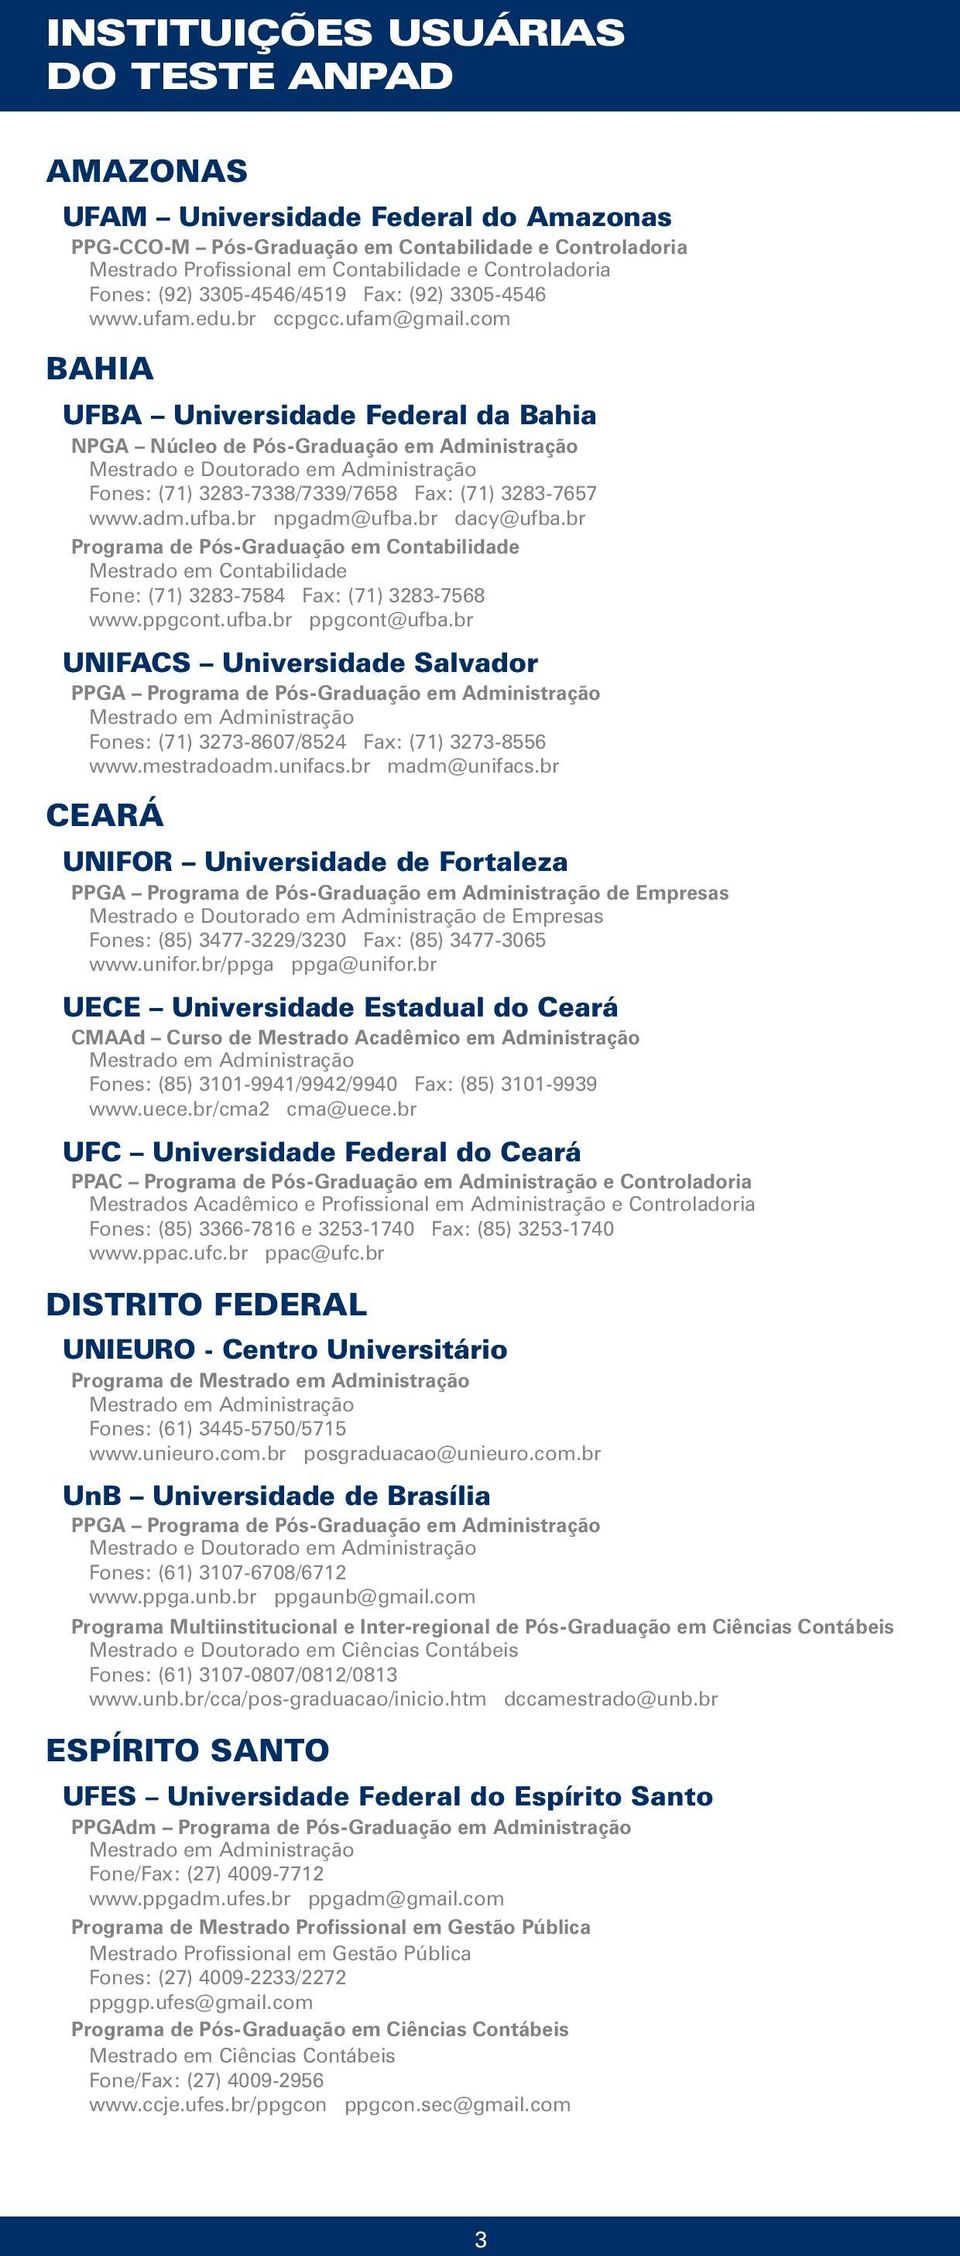 com BAHIA UFBA Universidade Federal da Bahia NPGA Núcleo de Pós-Graduação em Administração Fones: (71) 3283-7338/7339/7658 Fax: (71) 3283-7657 www.adm.ufba.br npgadm@ufba.br dacy@ufba.